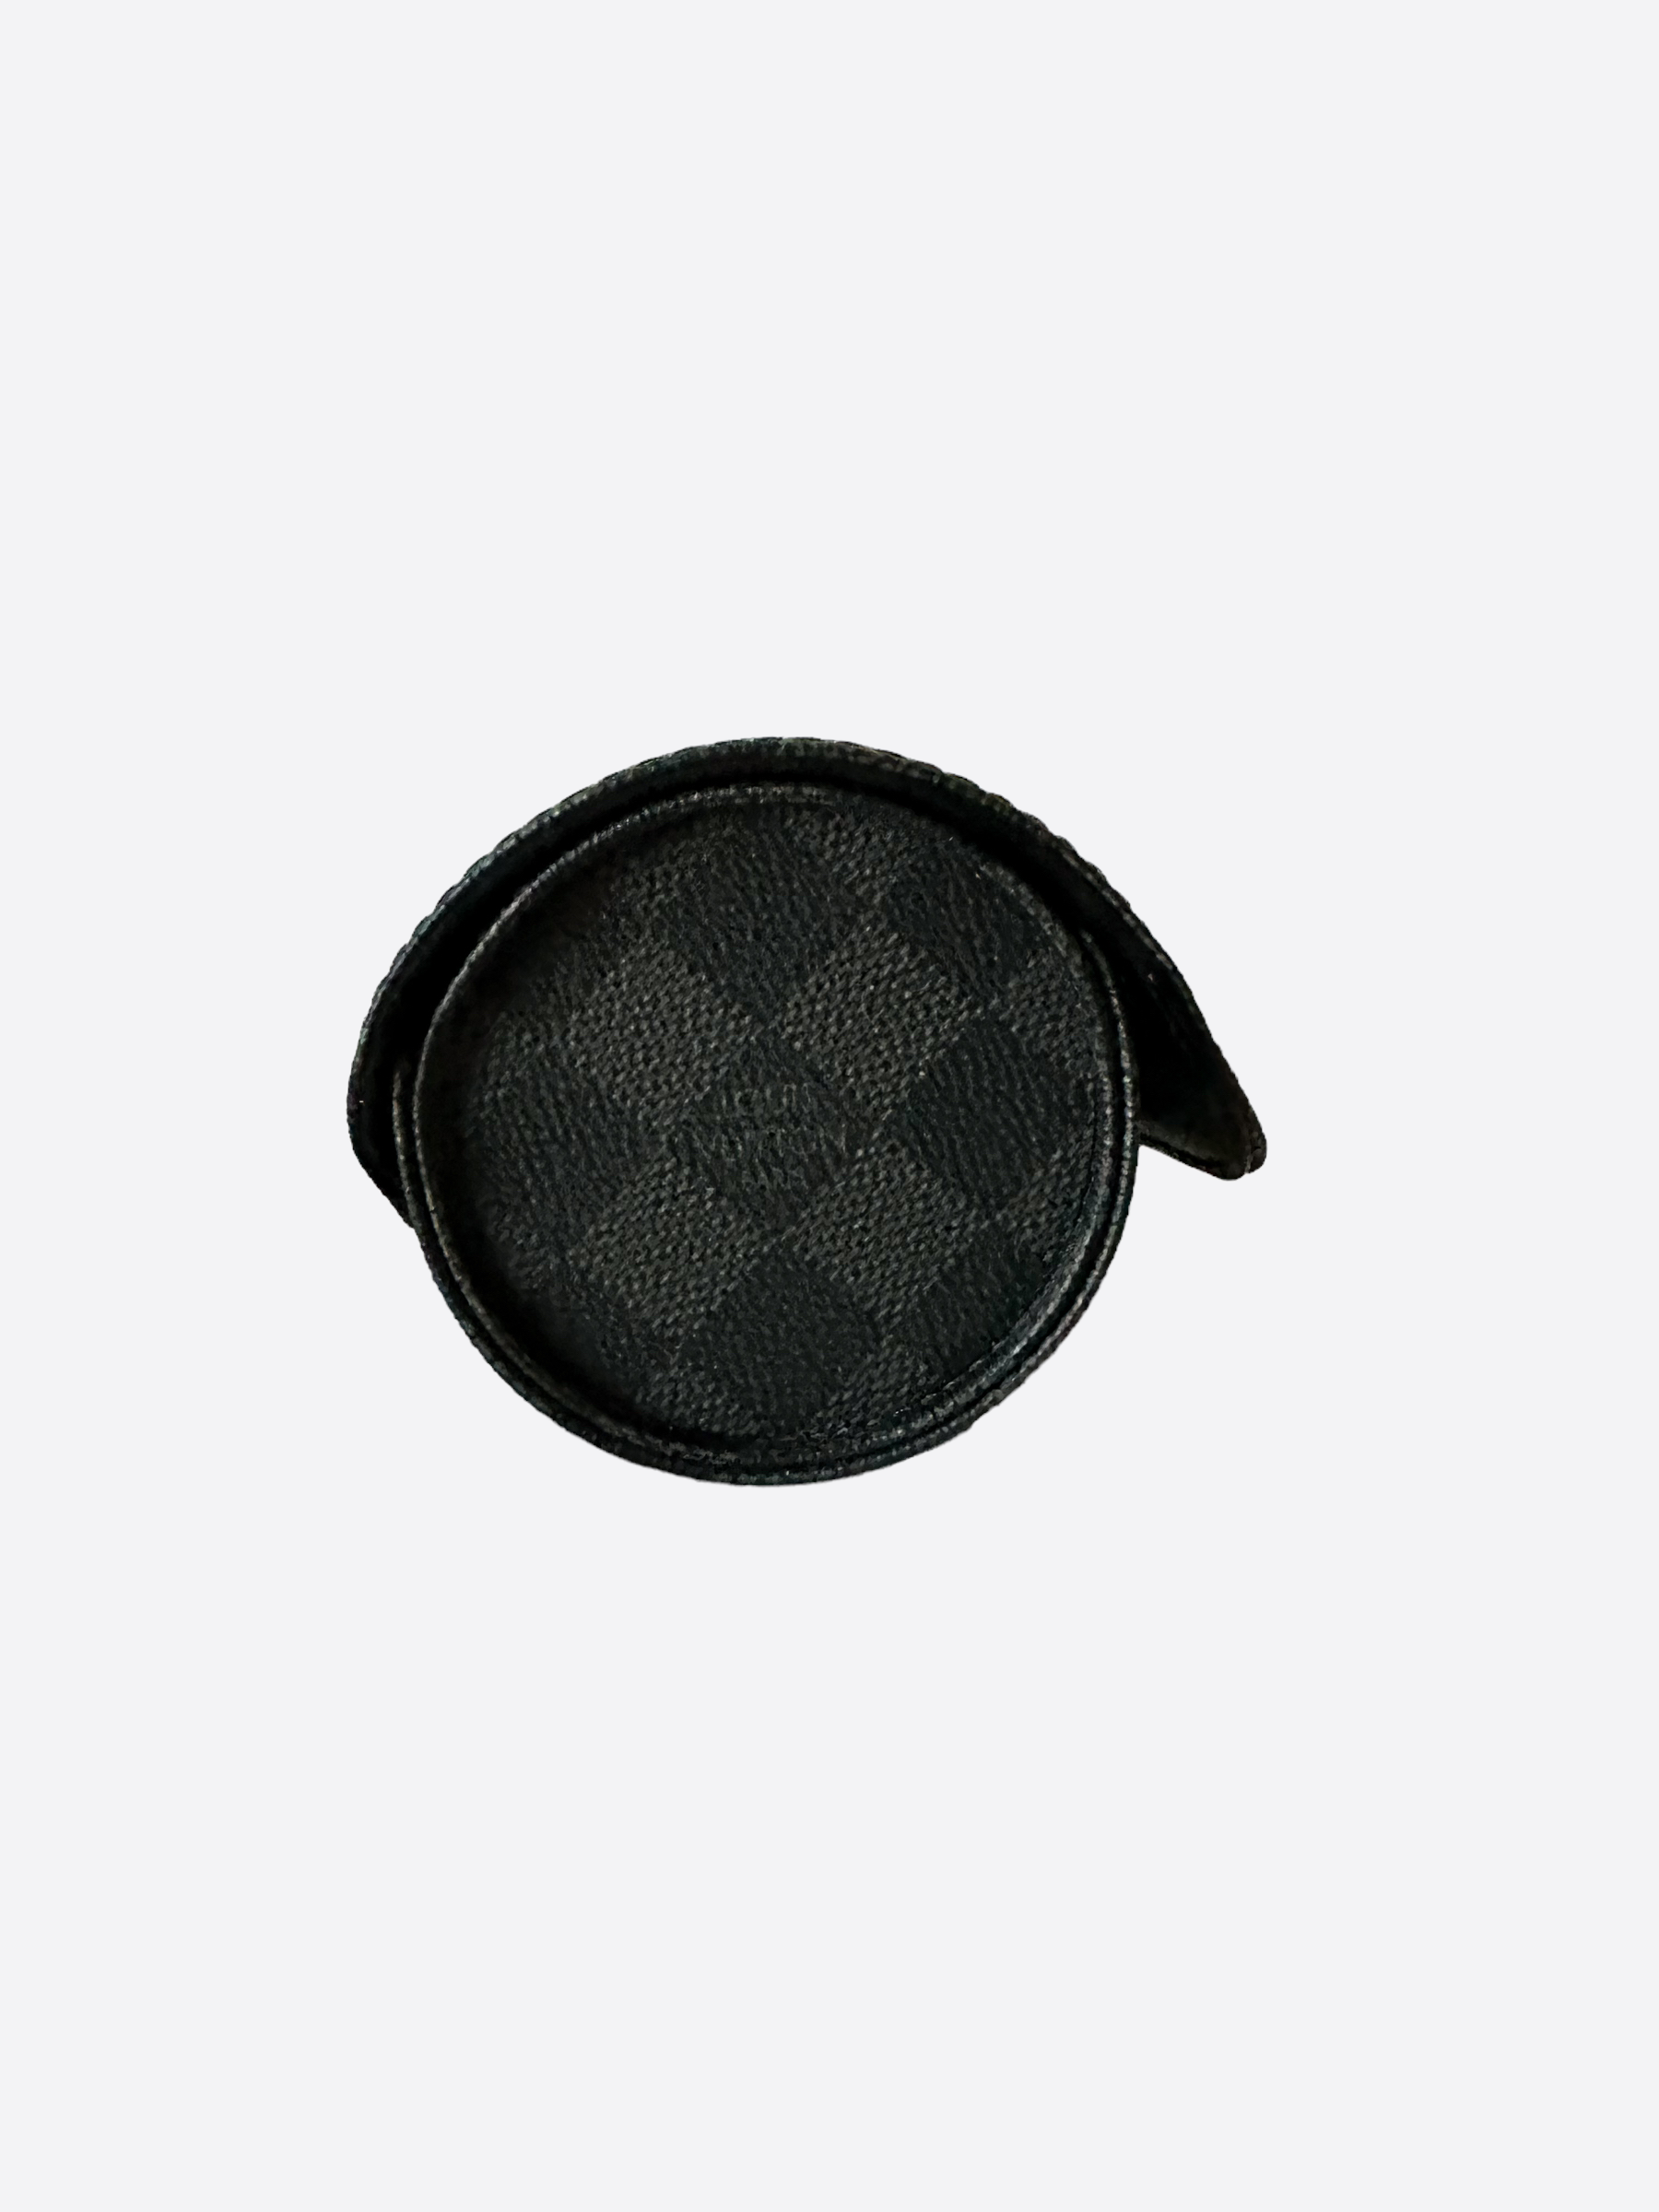 Louis Vuitton 3 Watch Case - Damier Graphite